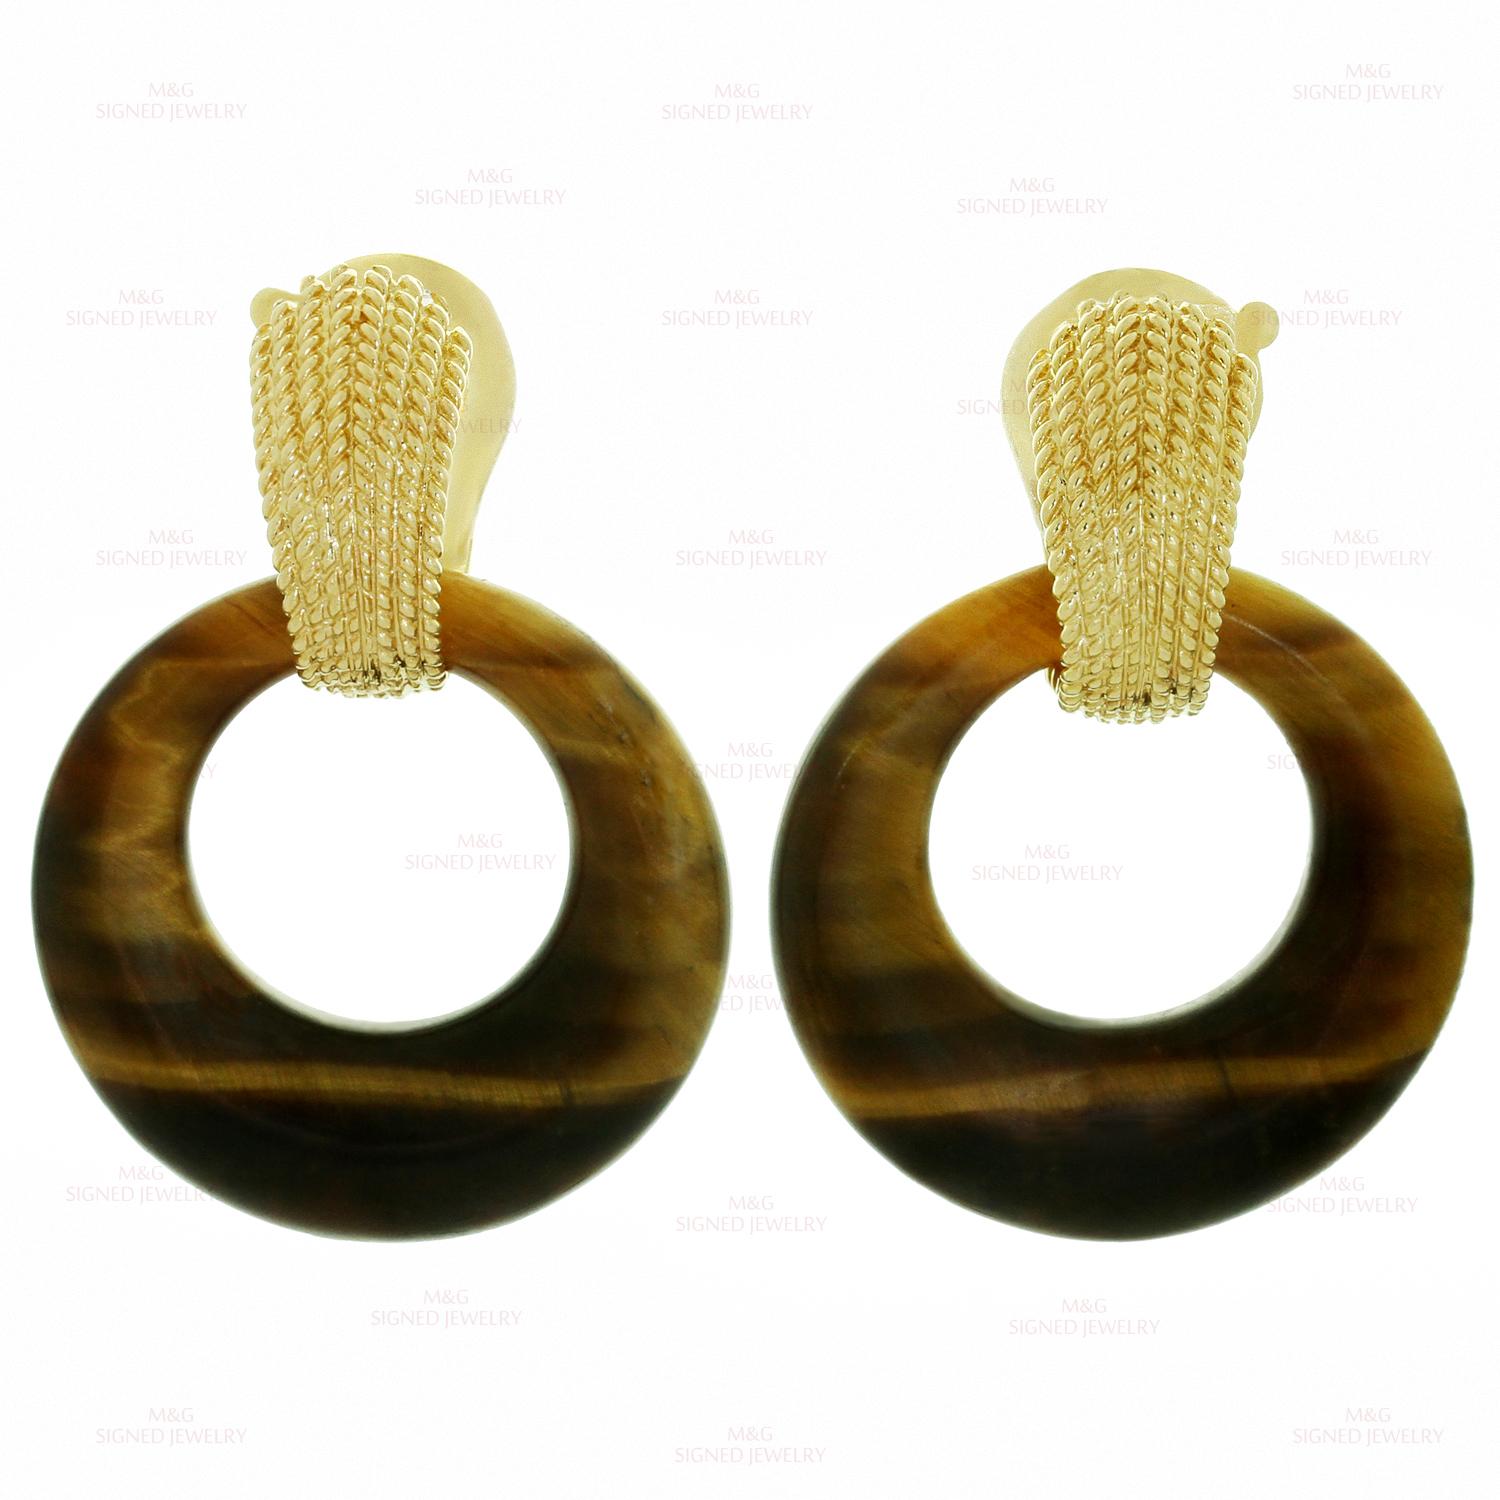 Brilliant Cut Van Cleef & Arpels Gemstone Interchangeable Yellow Gold Door Knocker Earrings